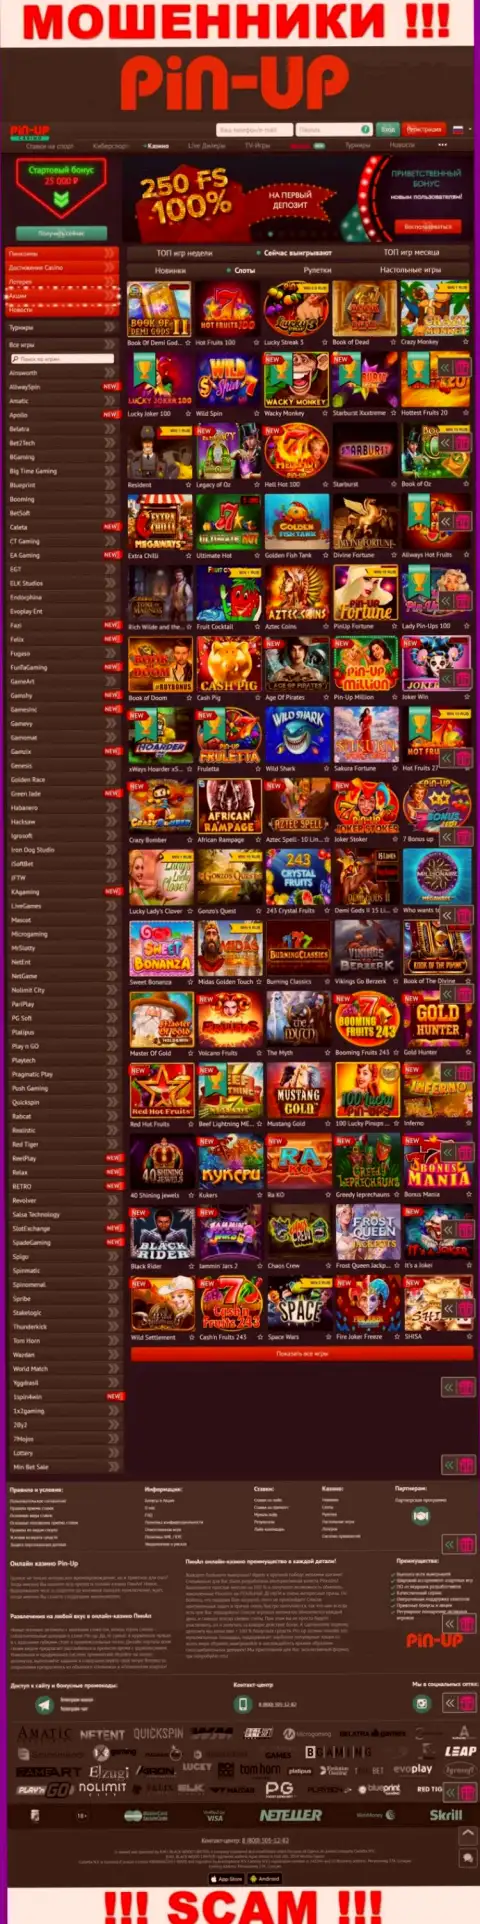 Pin-Up Casino - это официальный сайт internet жуликов Pin-Up Casino